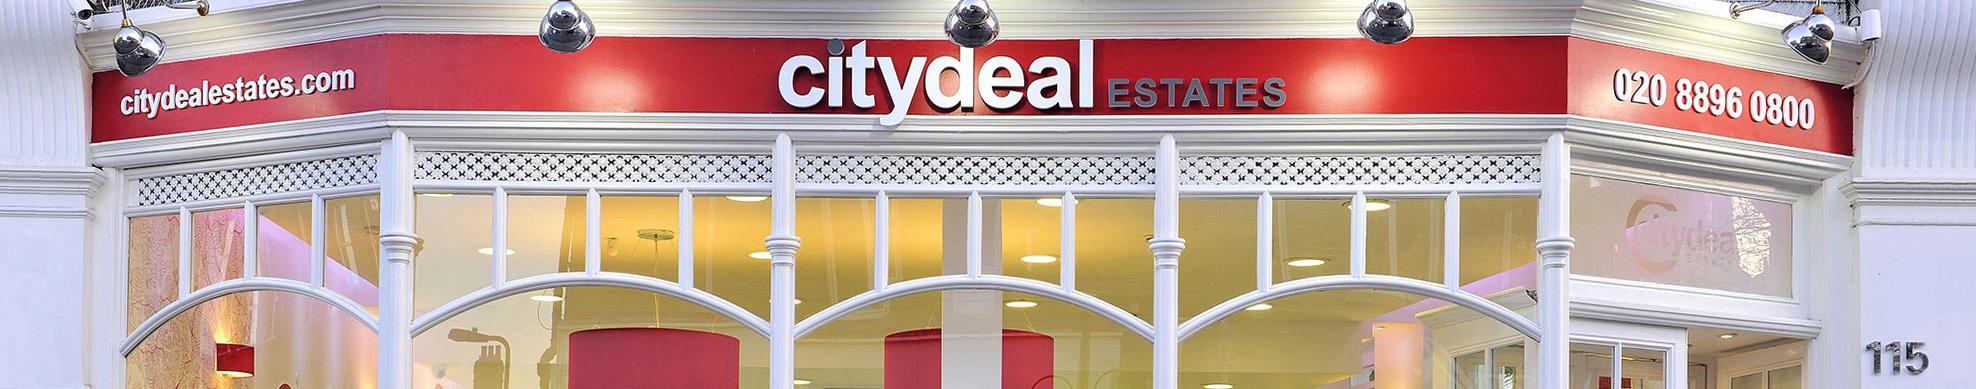 Citydeal Estates profil başlığı